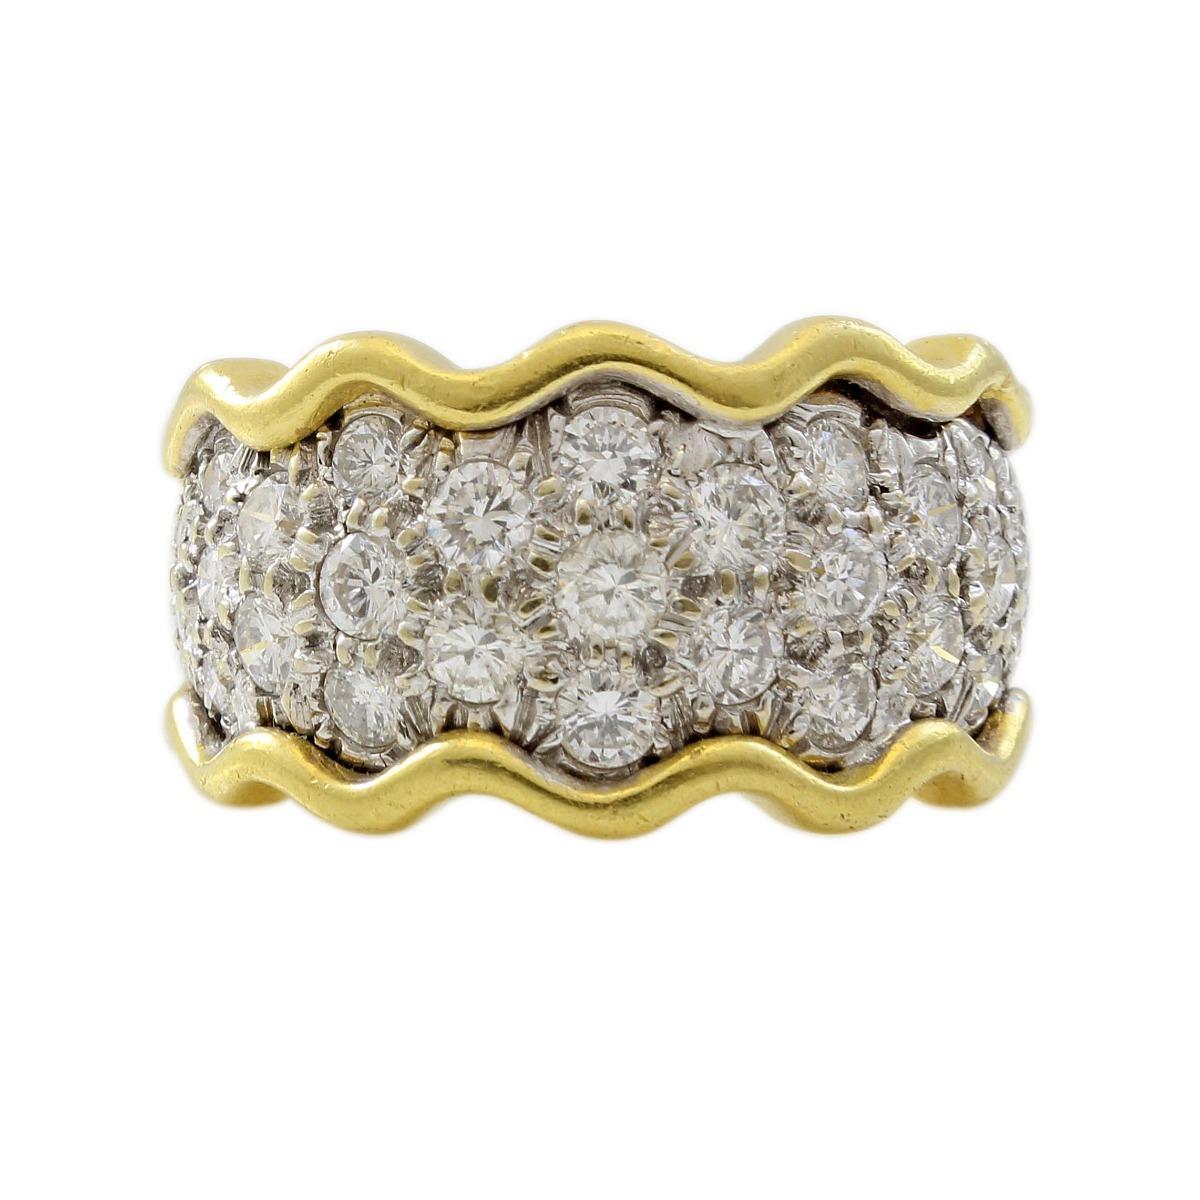 18 Karat Yellow Gold 3 Carat Diamond Estate Band Ring For Sale